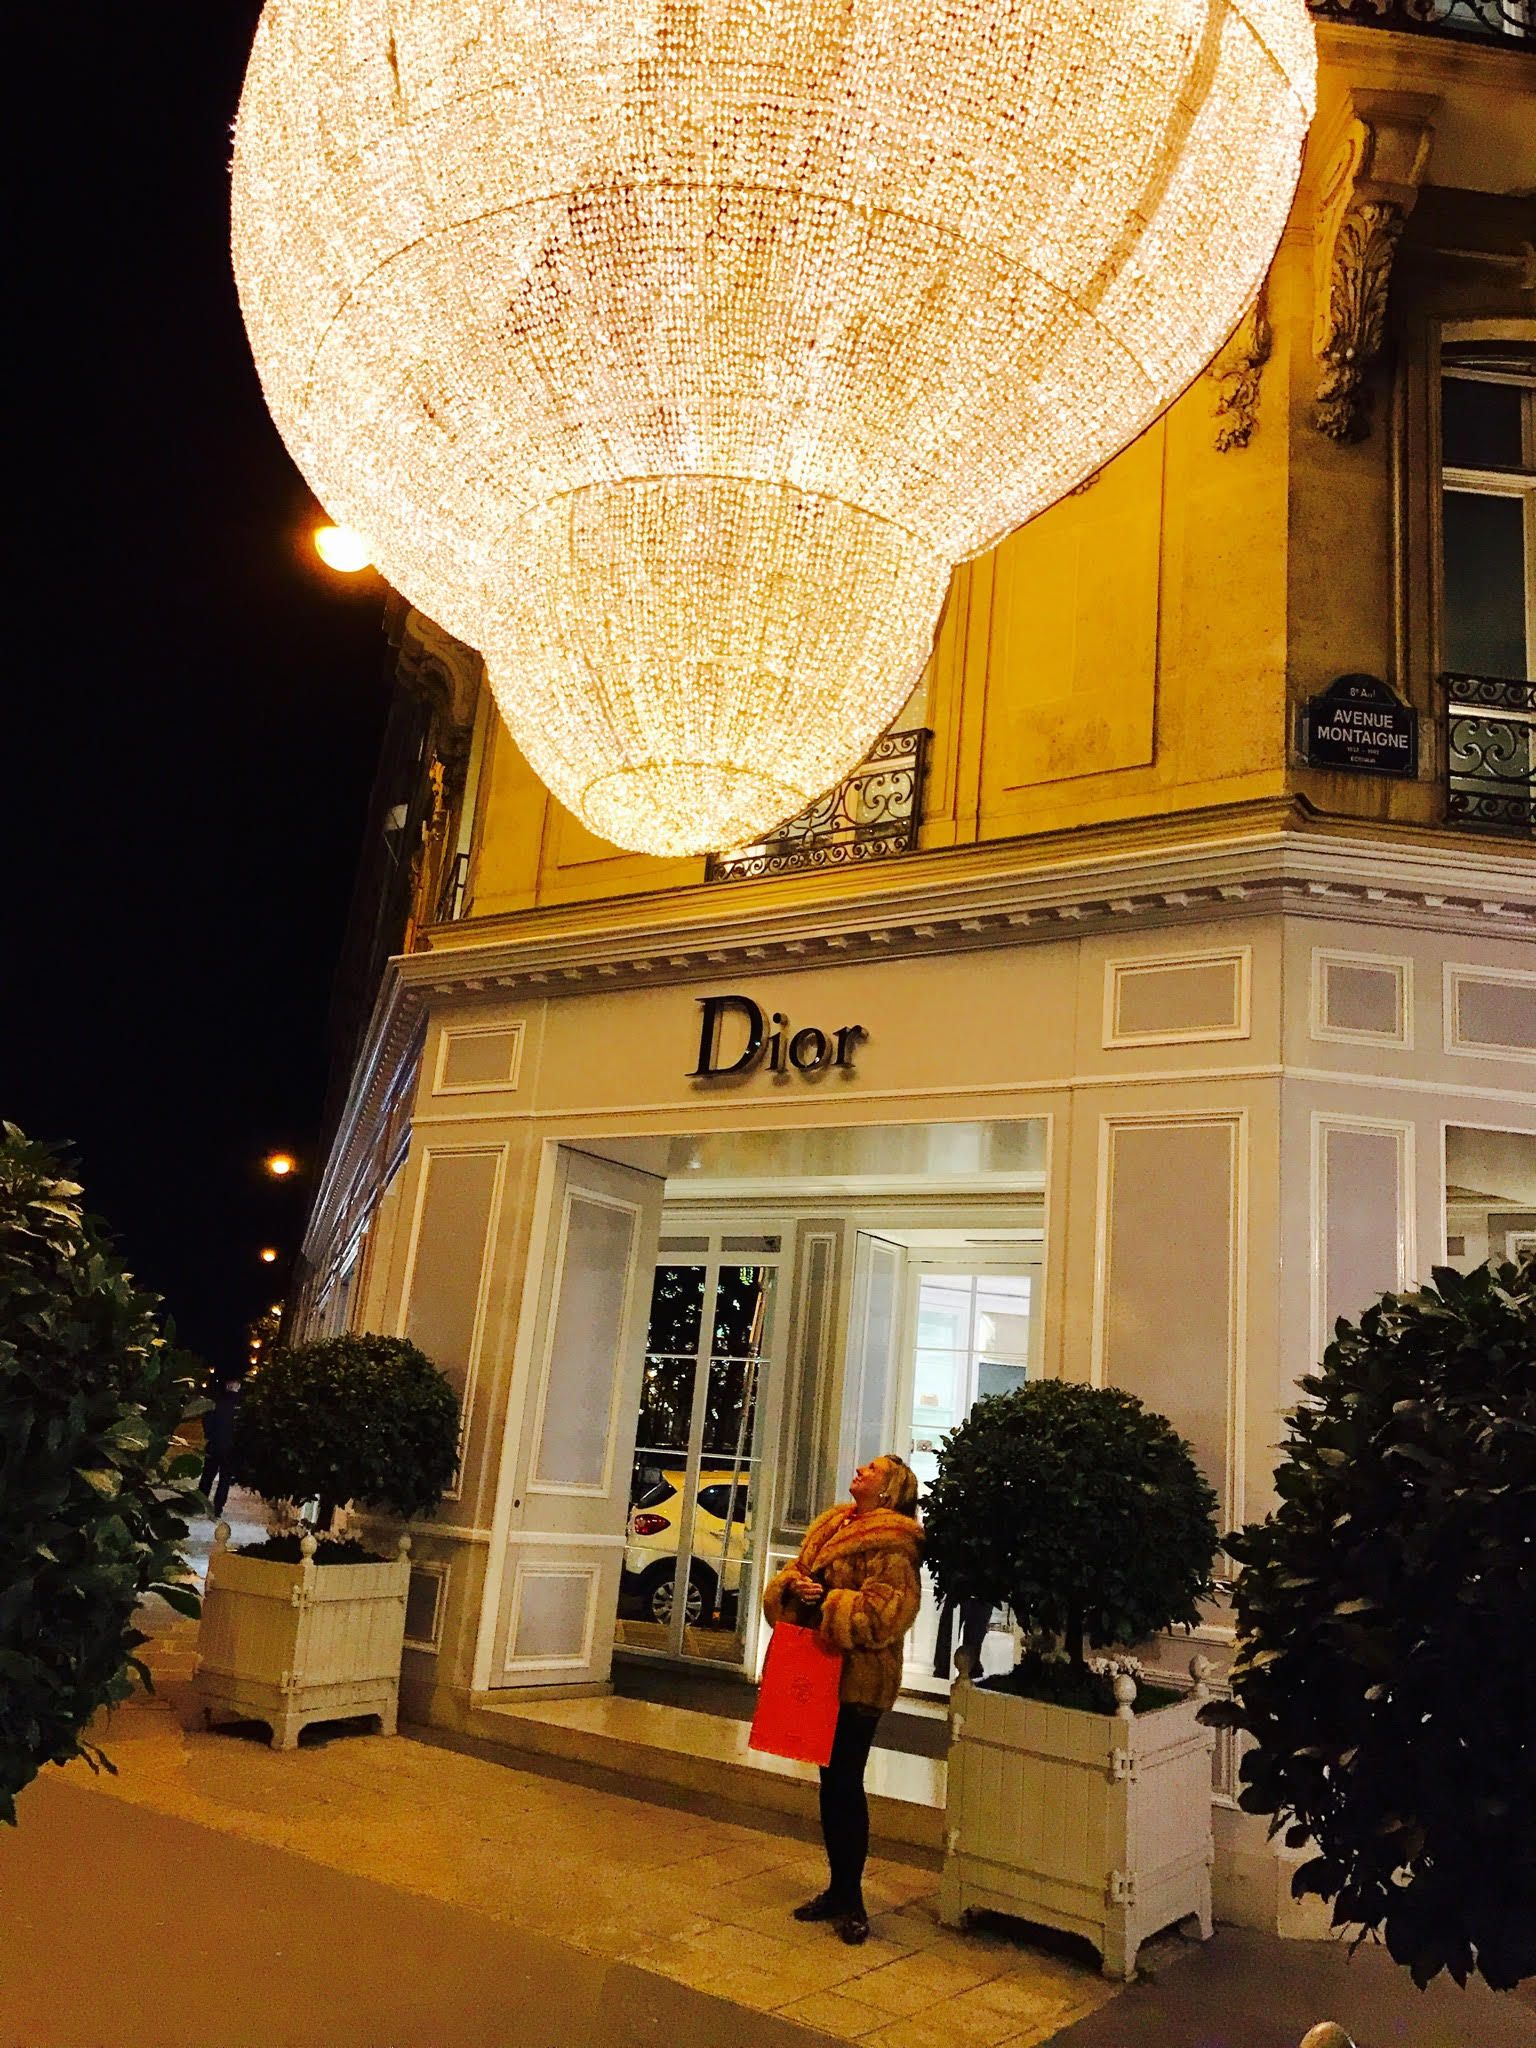 Dior at Christmas